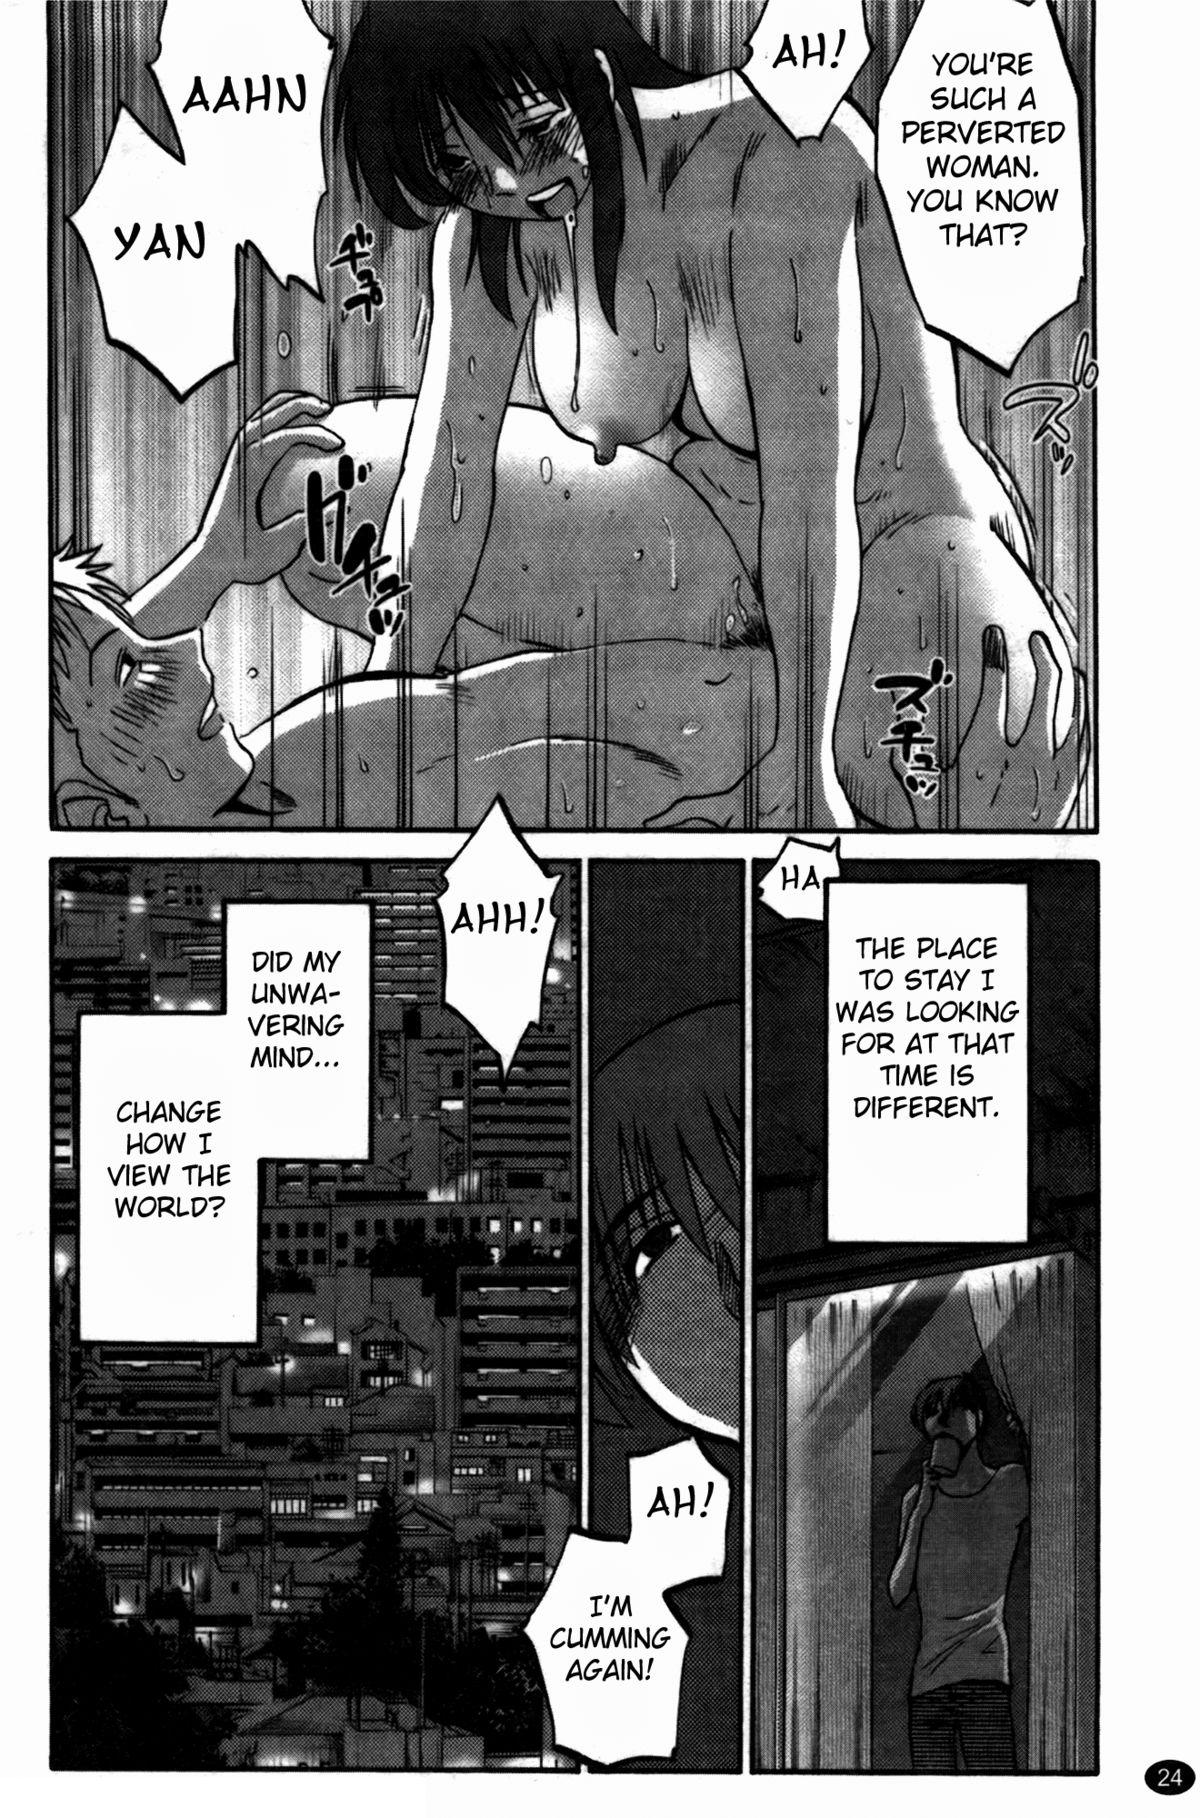 Monokage no Irisu Volume 3 Ch. 17-18 24